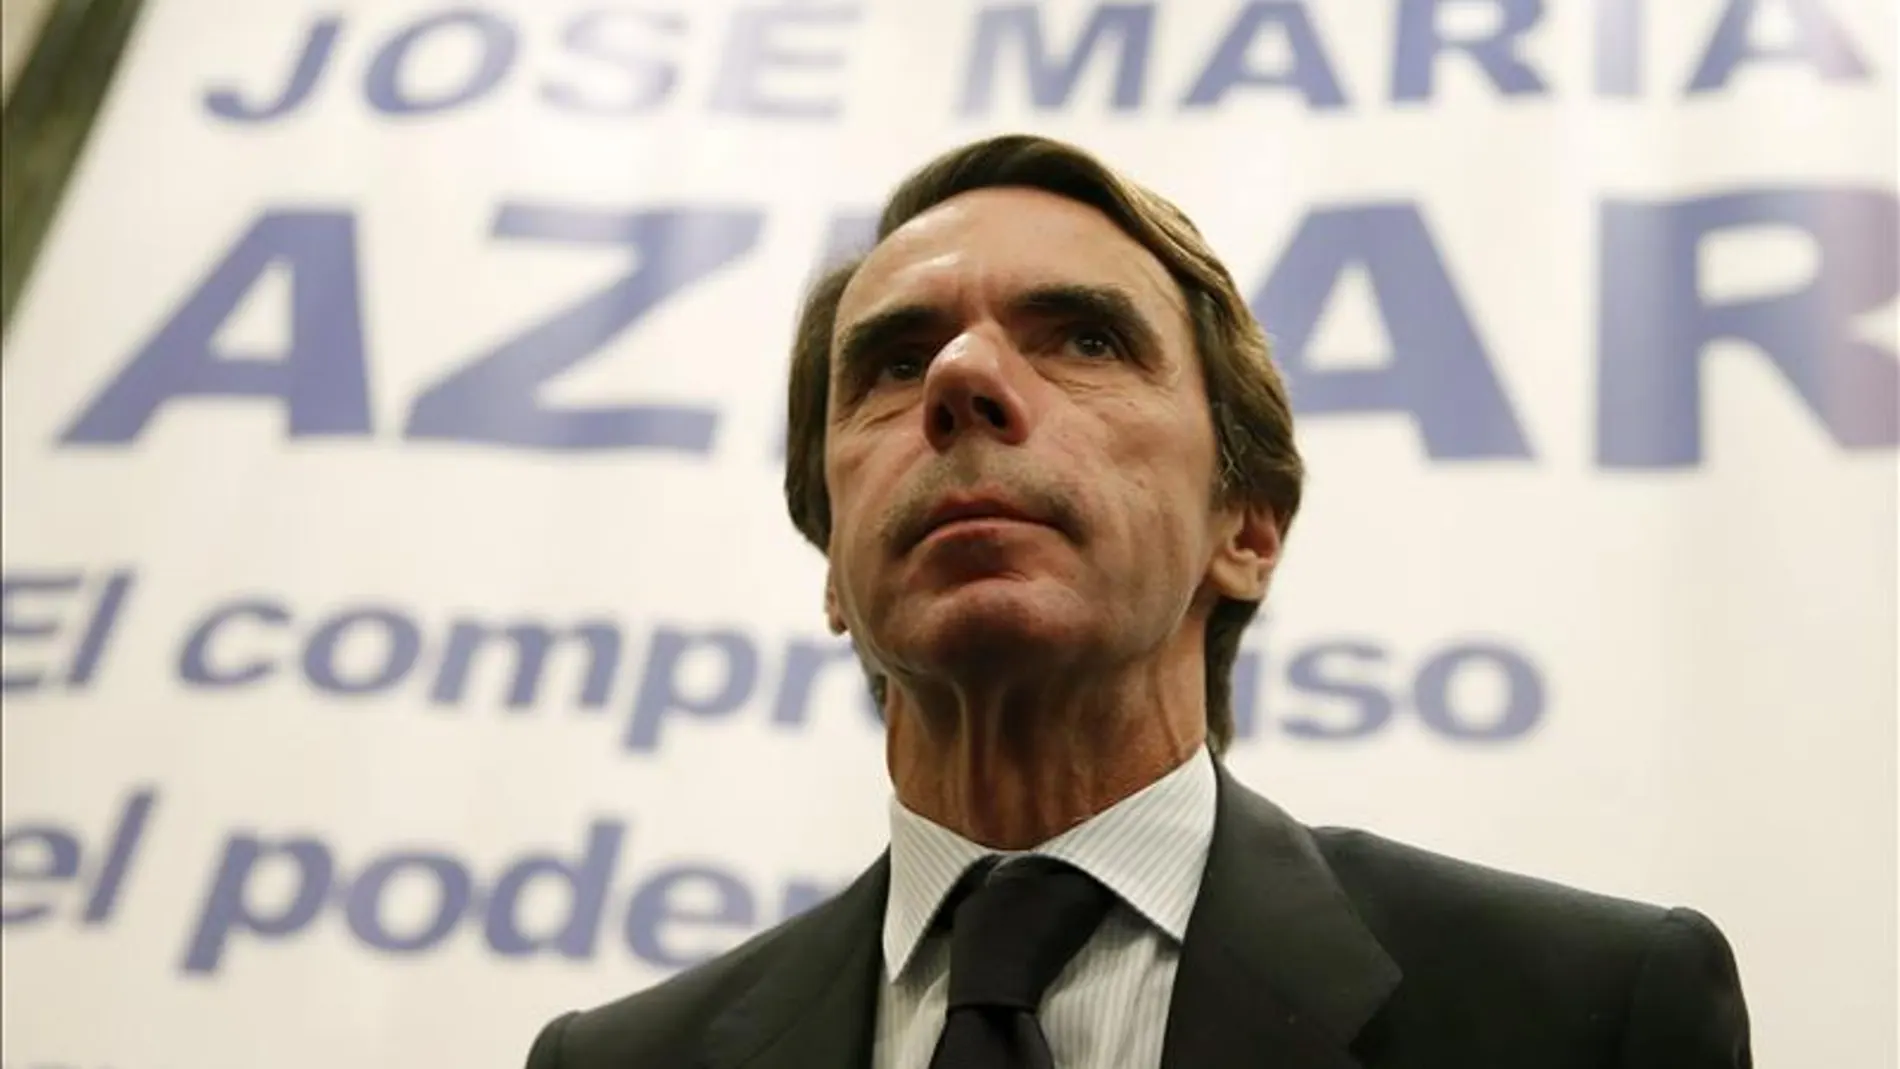 José María Aznar en una imagen de archivo